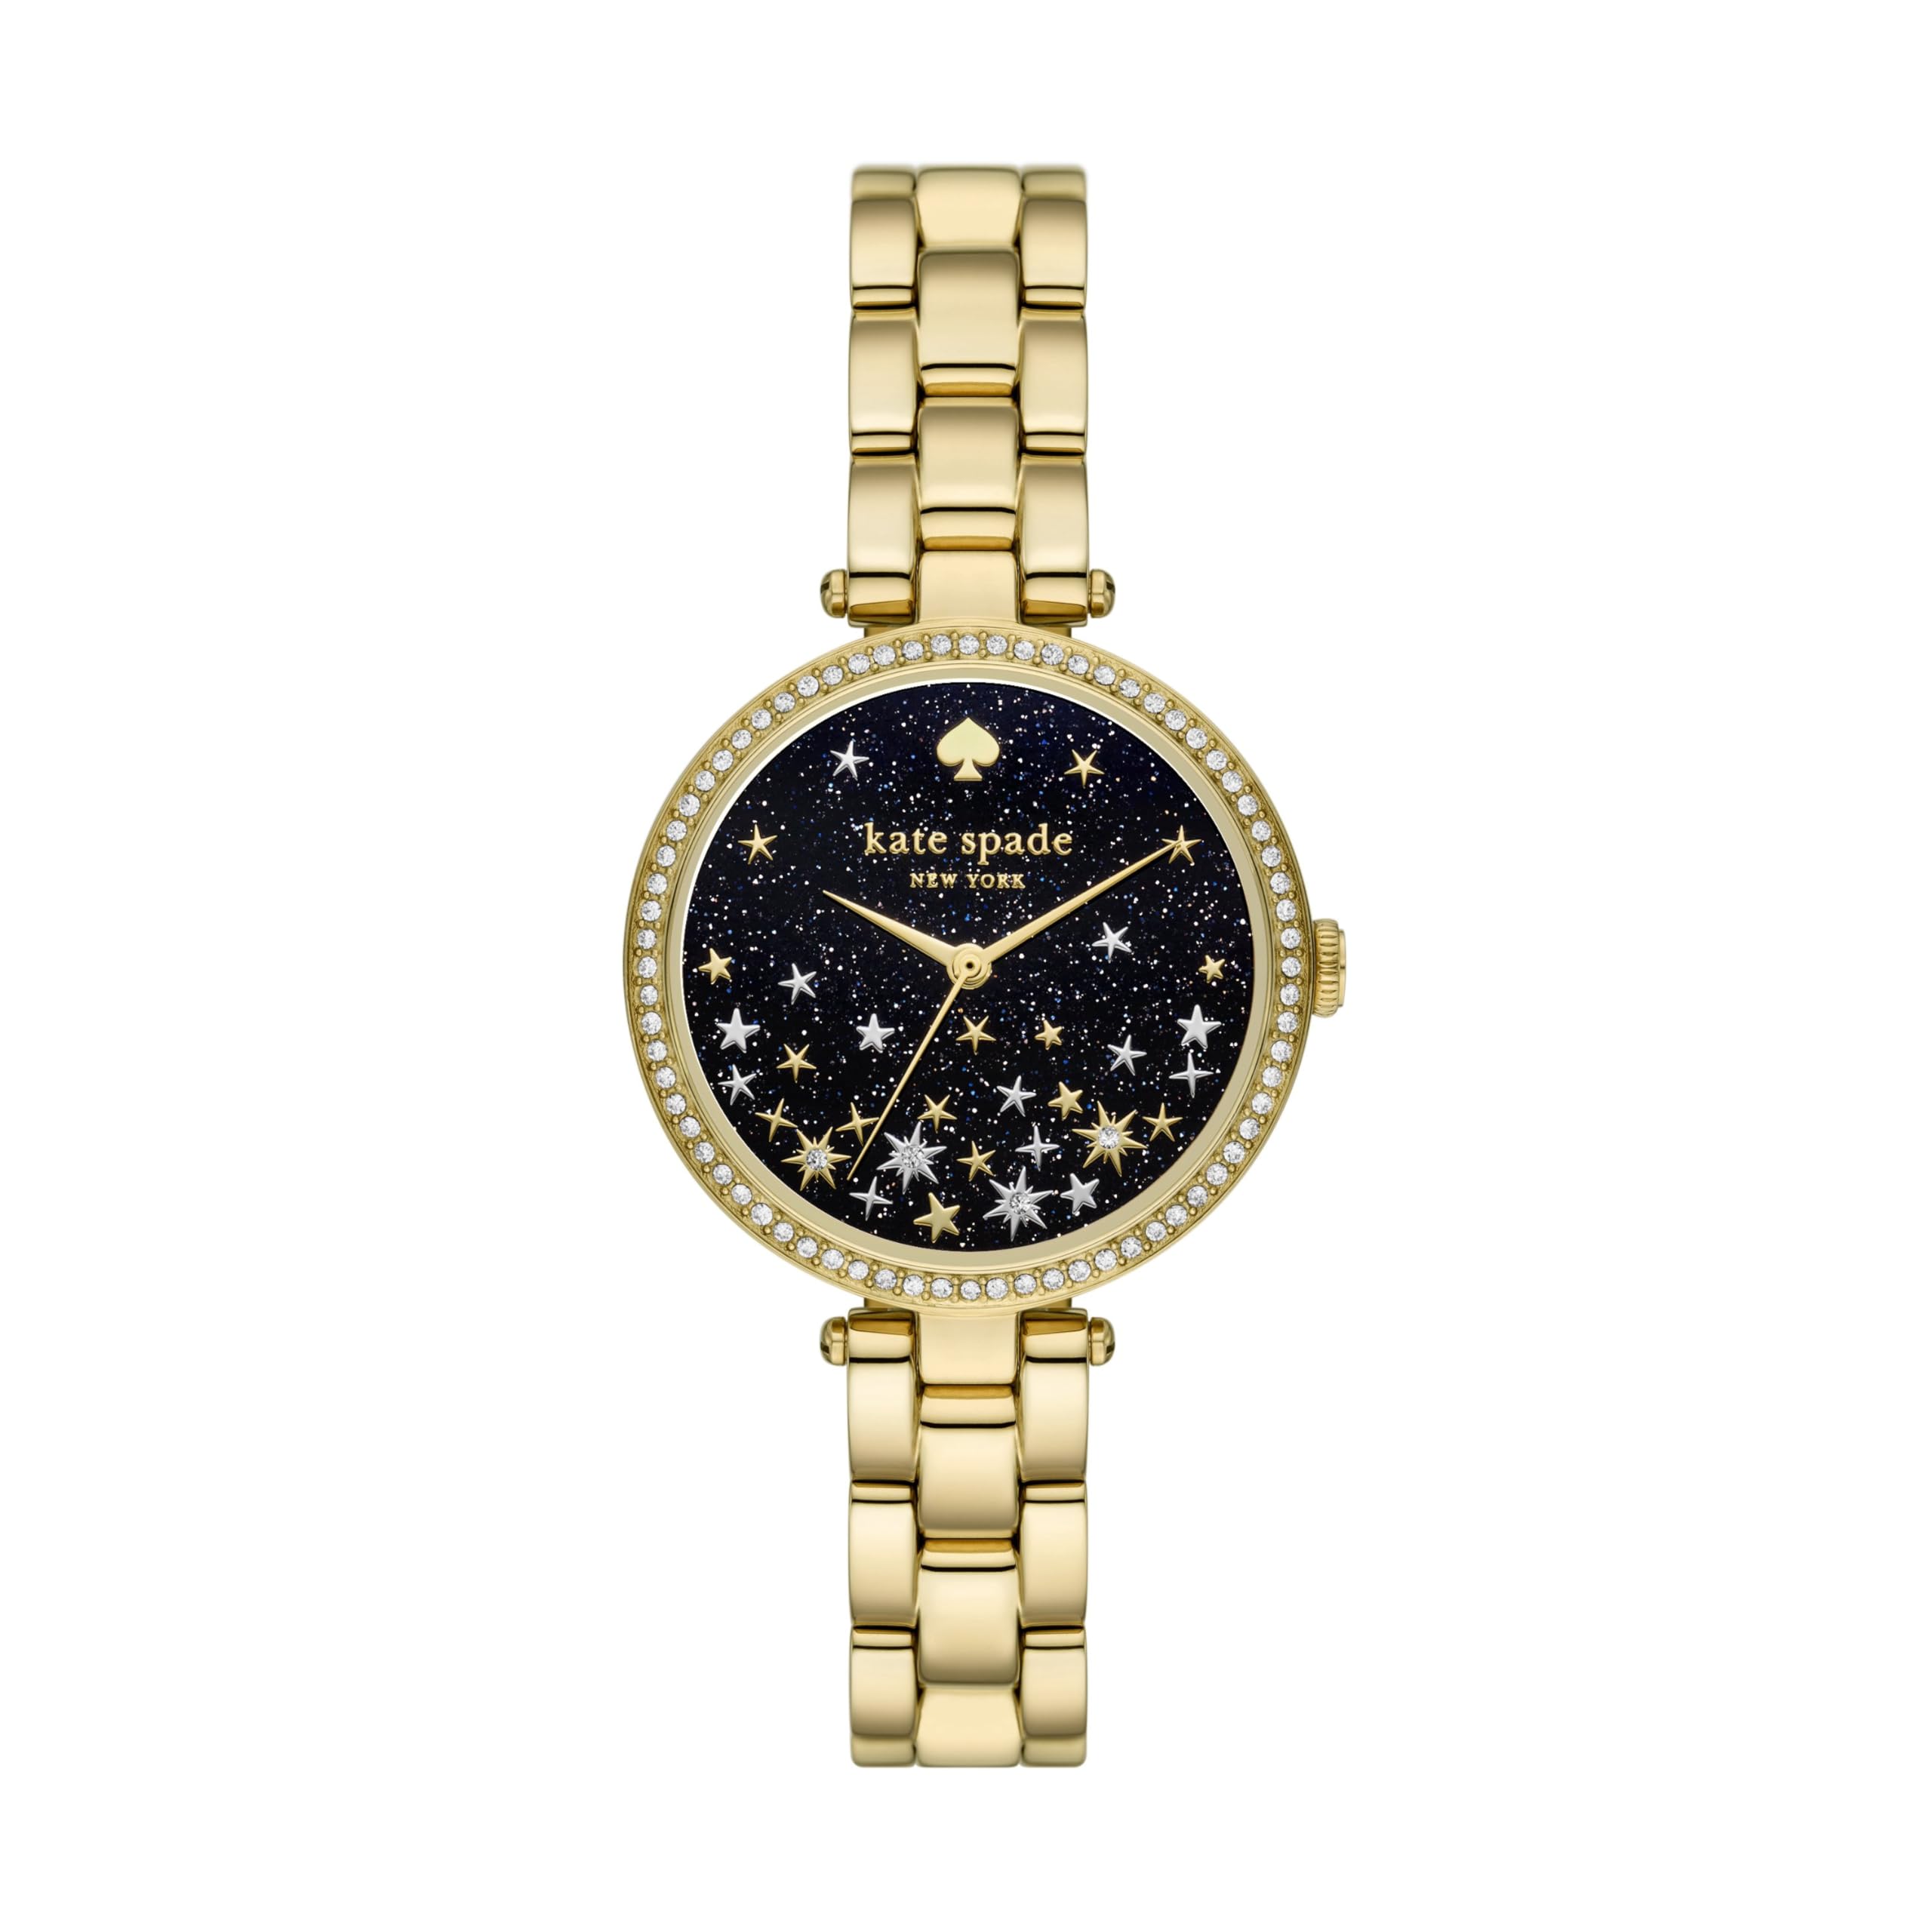 Часы Holland из нержавеющей стали золотистого цвета - KSW1814 Kate Spade New York